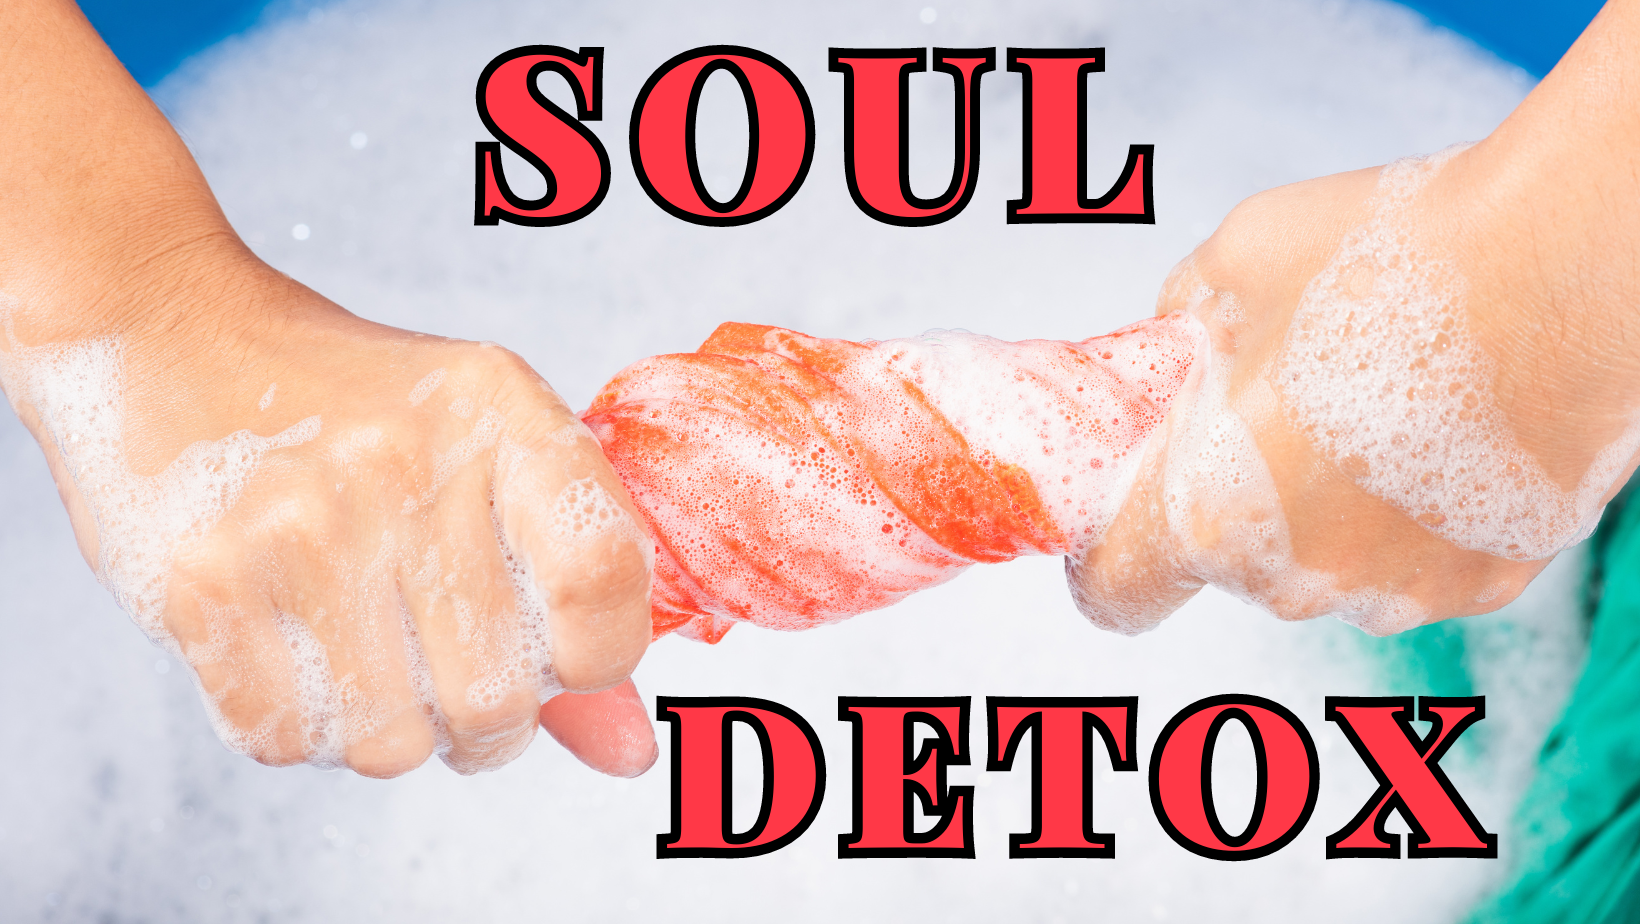 Soul Detox - Action